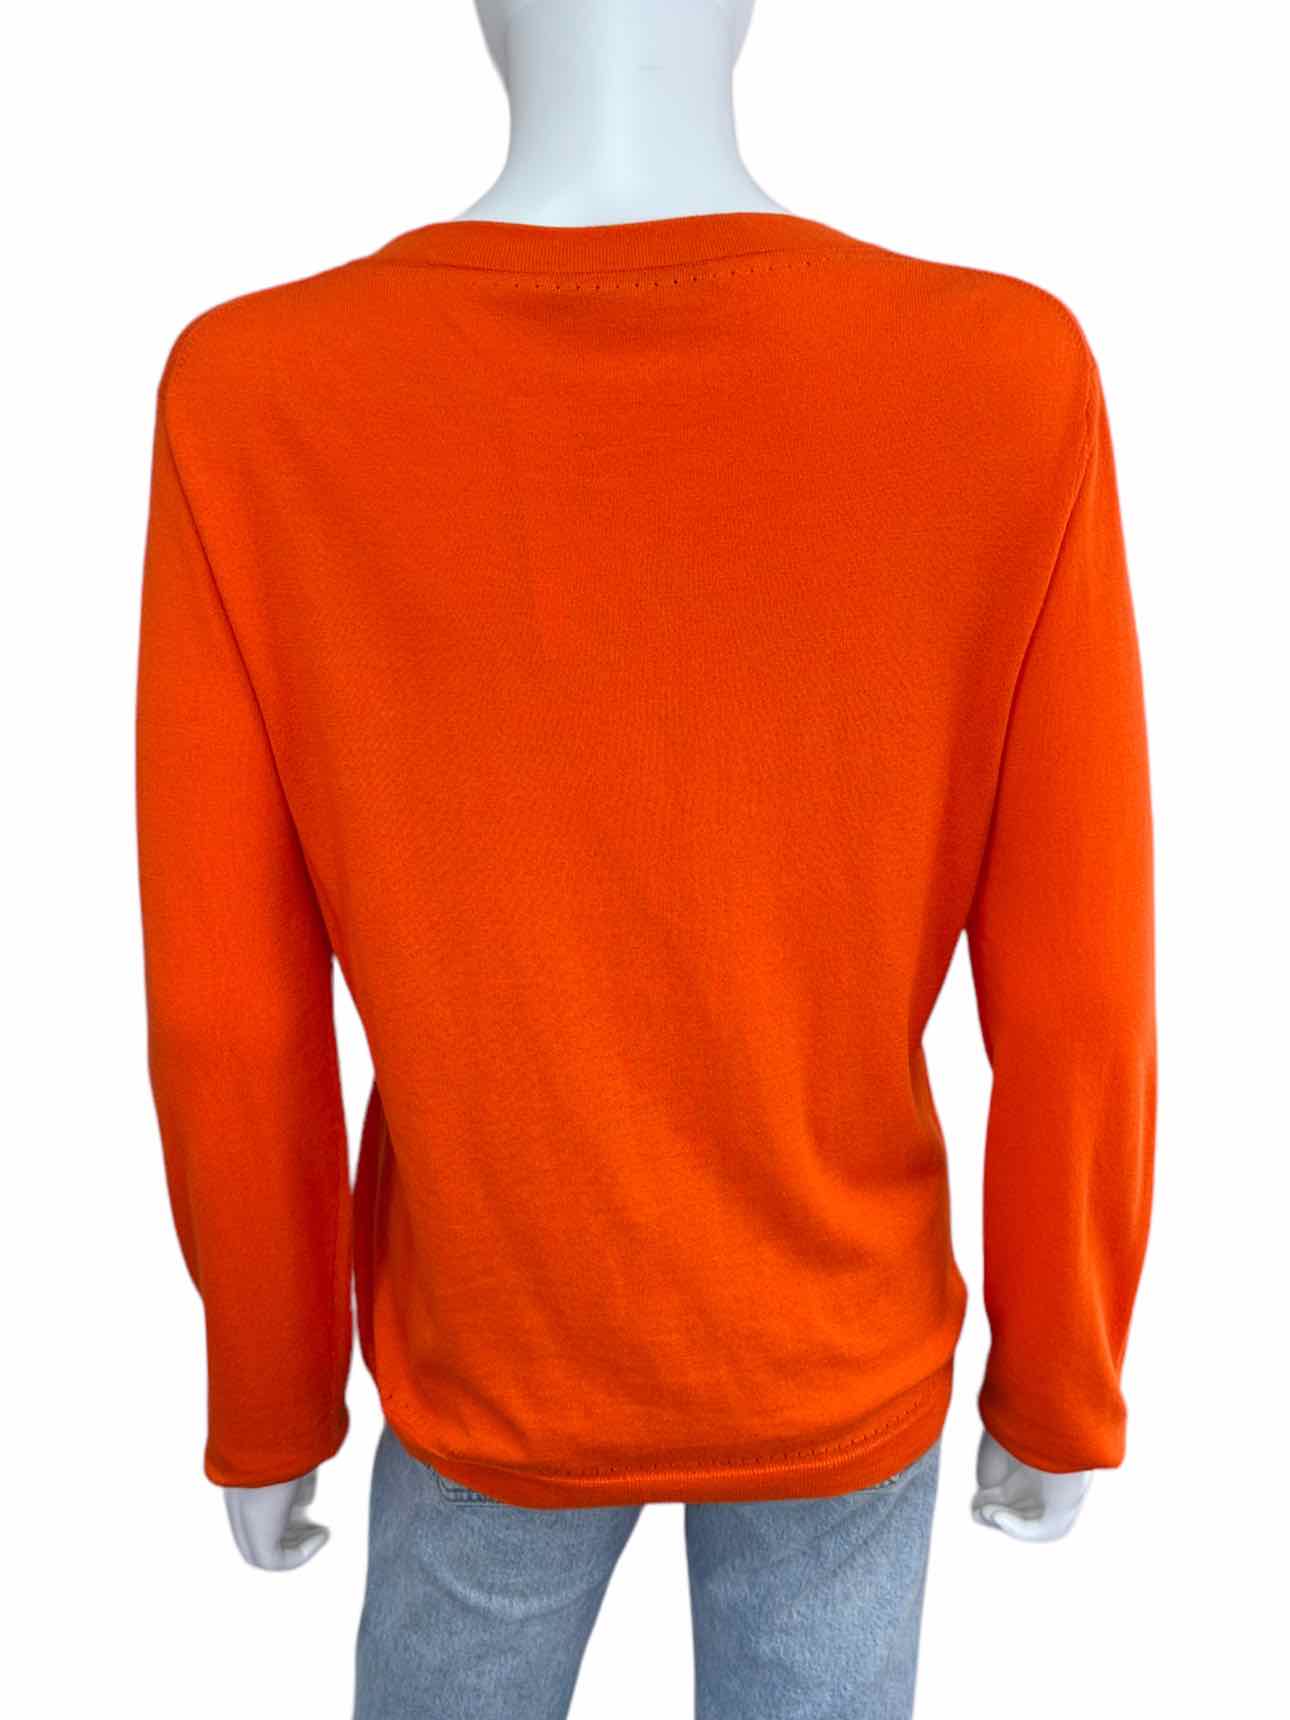 TRINA TURK Orange Cardigan Size L